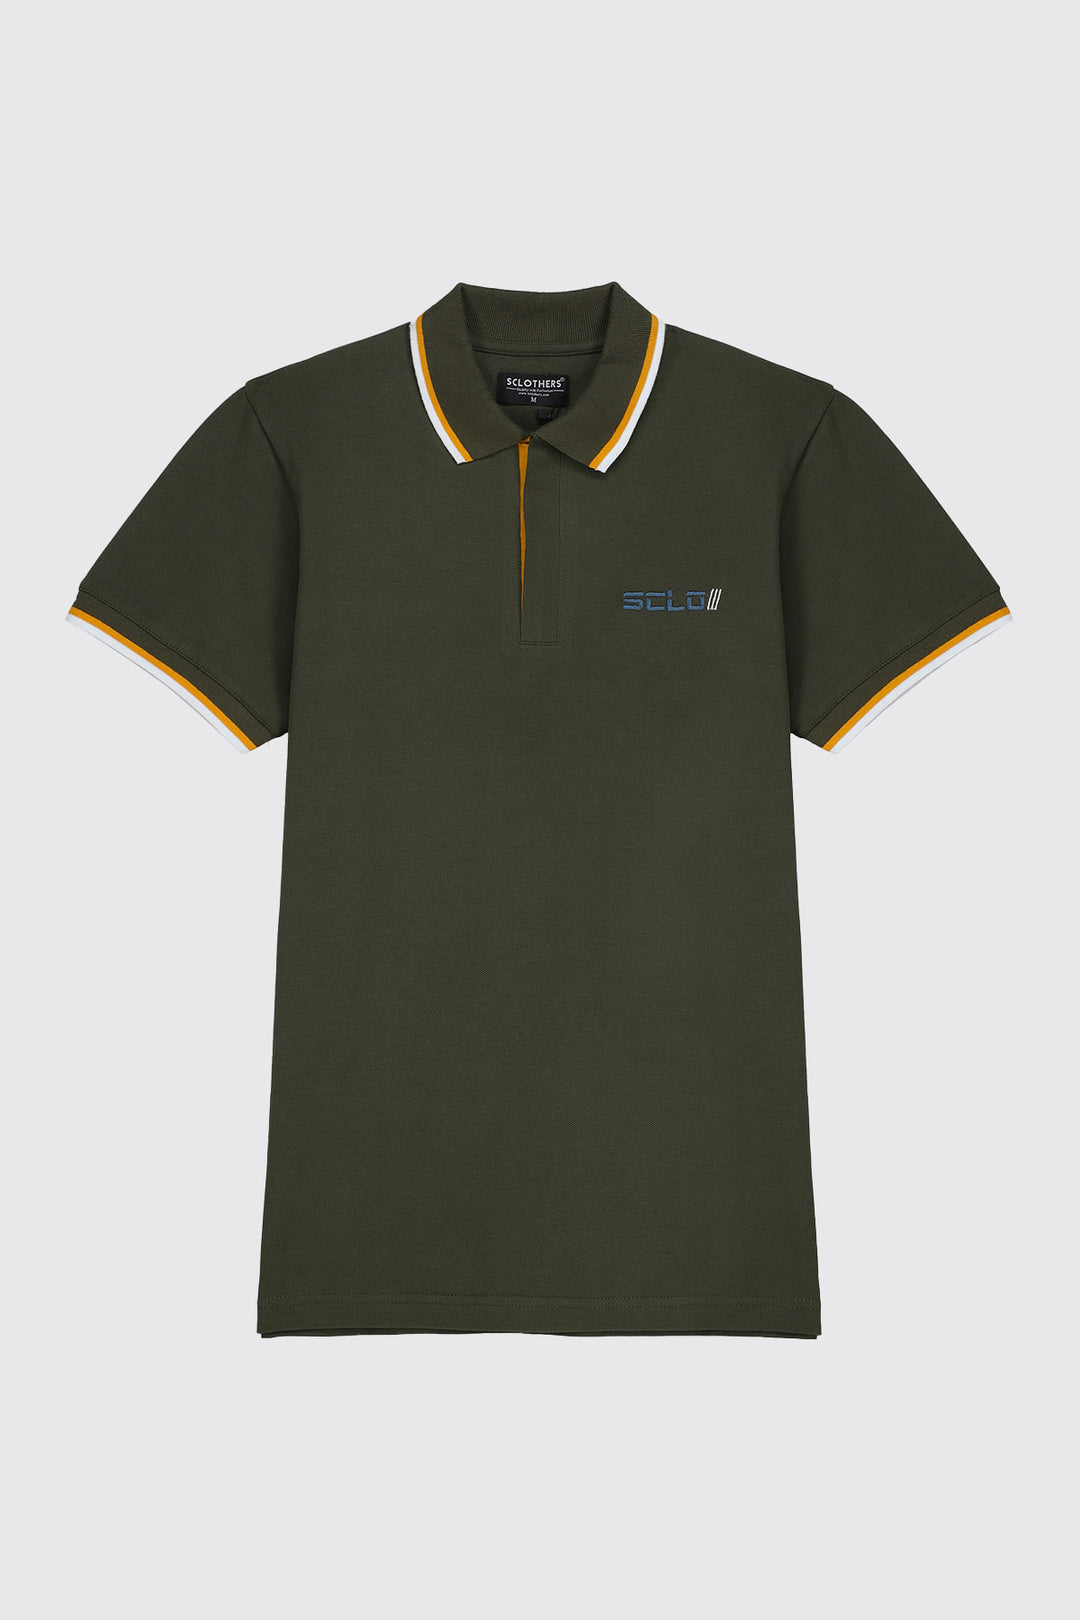 Olive Zip-Up Neckline Polo Shirt (Plus Size) - S23 - MP0223P